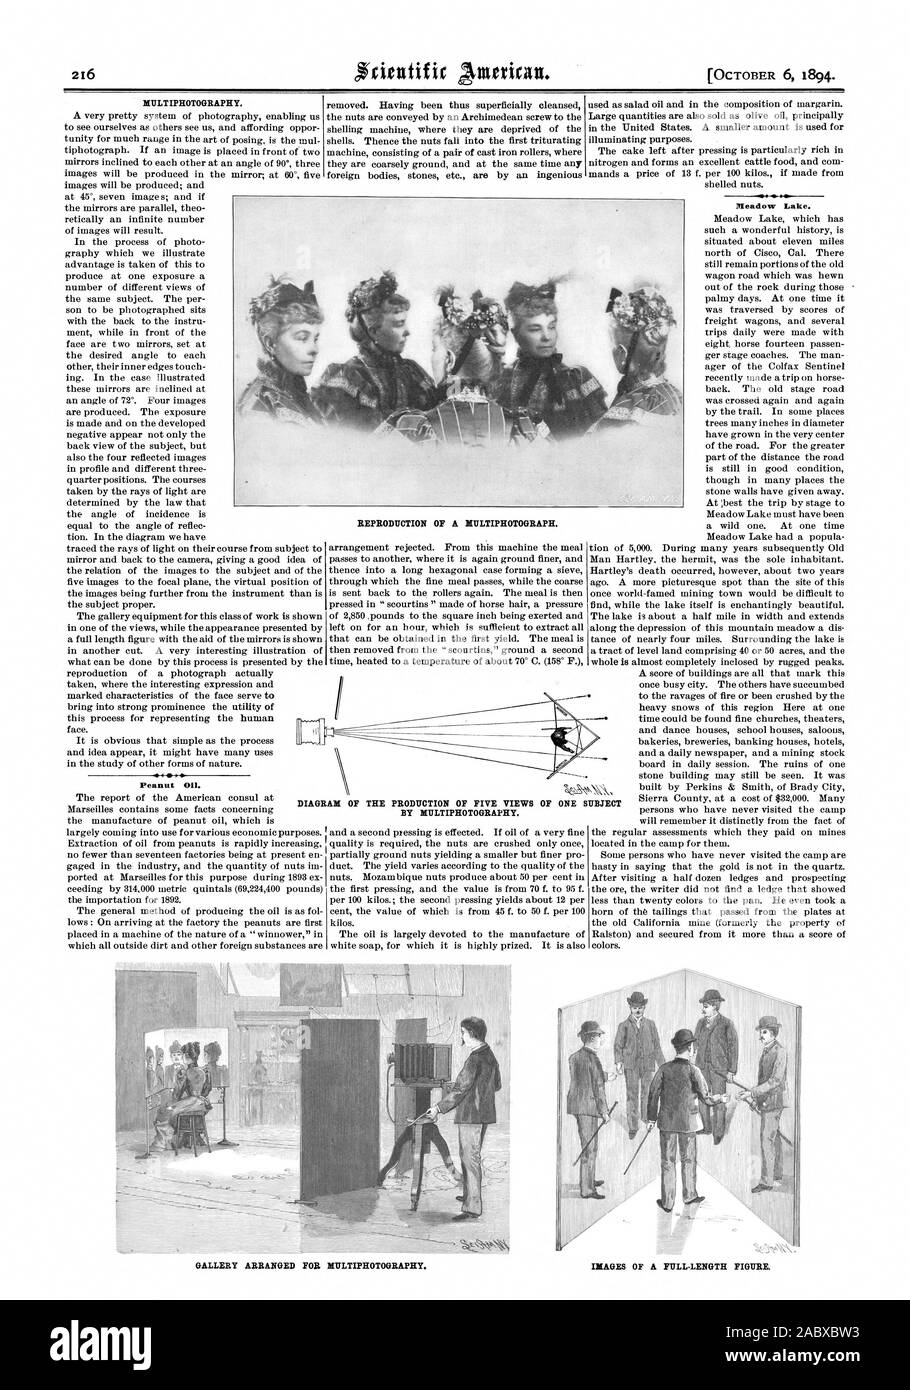 MULTIPHOTOGRAPHY. Aceite de cacahuete. Pl[eadour Lago. Reproducción de una MITLTIPHOTOGRAPH. Esquema de la producción de cinco vistas por MULTIPHOTOGRAPHY. De UN ASUNTO ARREGLADO PARA MULTIPHOTOGRAPHY Galería. Imágenes de una figura de longitud completa, Scientific American, 1894-10-06 Foto de stock